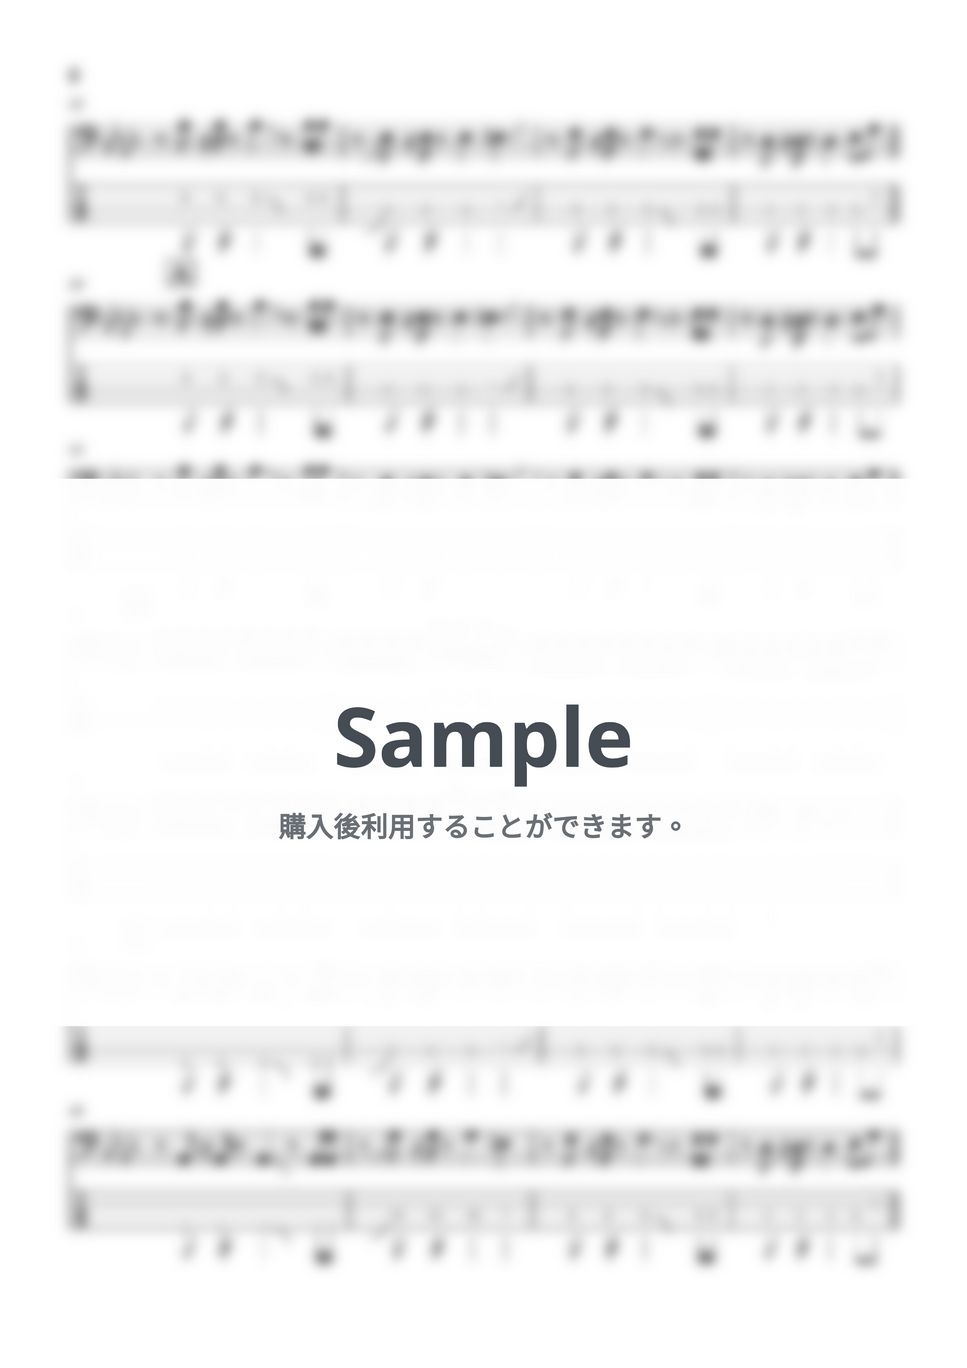 milet×Aimer×幾田りら - おもかげ (ベース譜) by Kodai Hojo